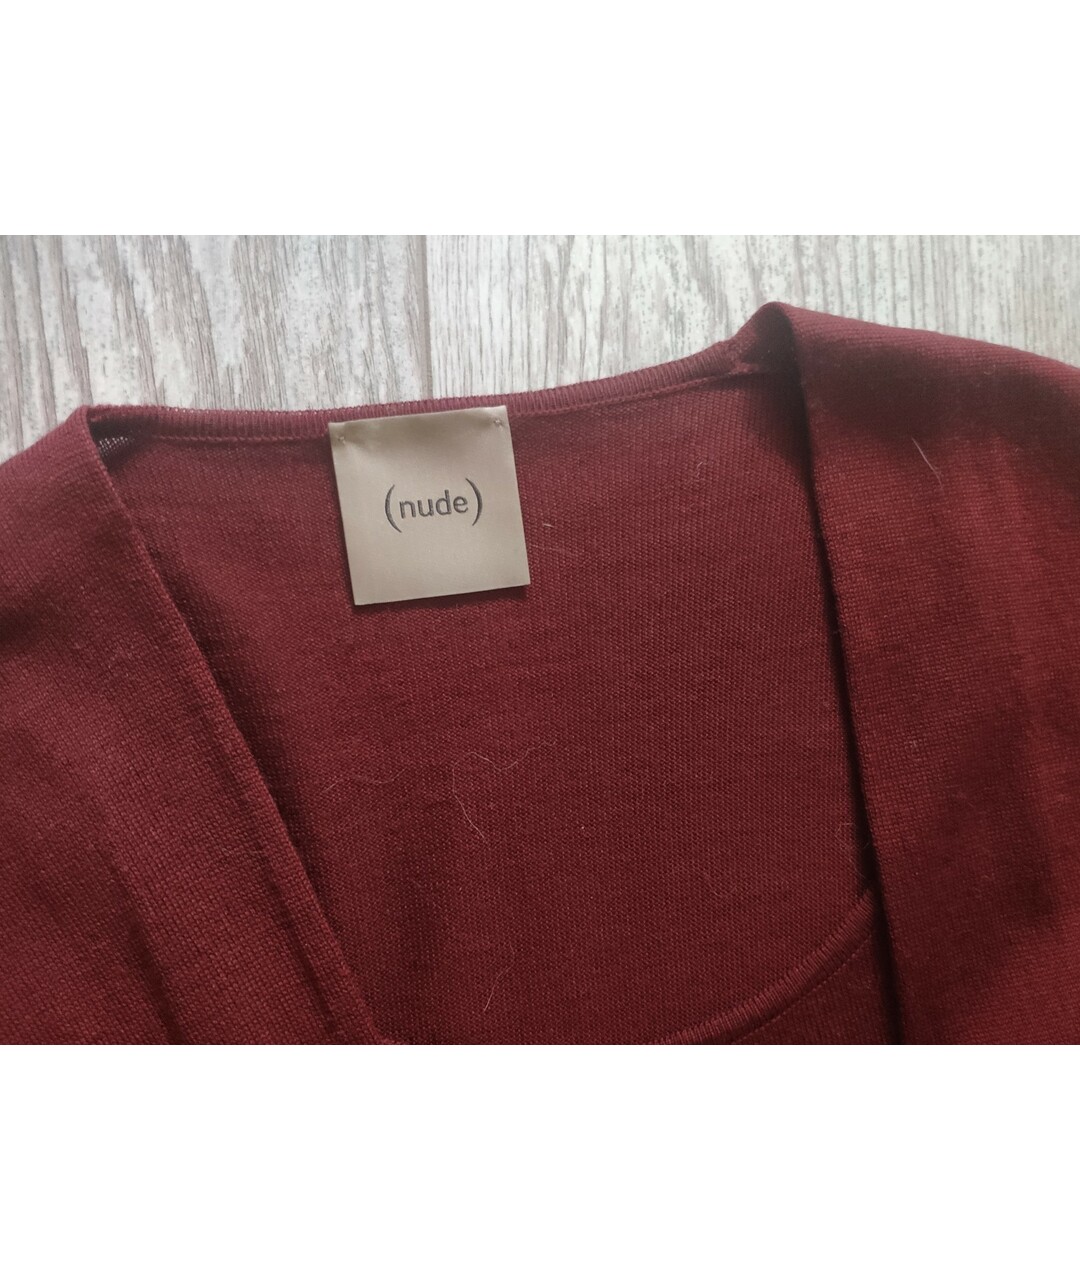 NUDE Бордовый шерстяной джемпер / свитер, фото 3